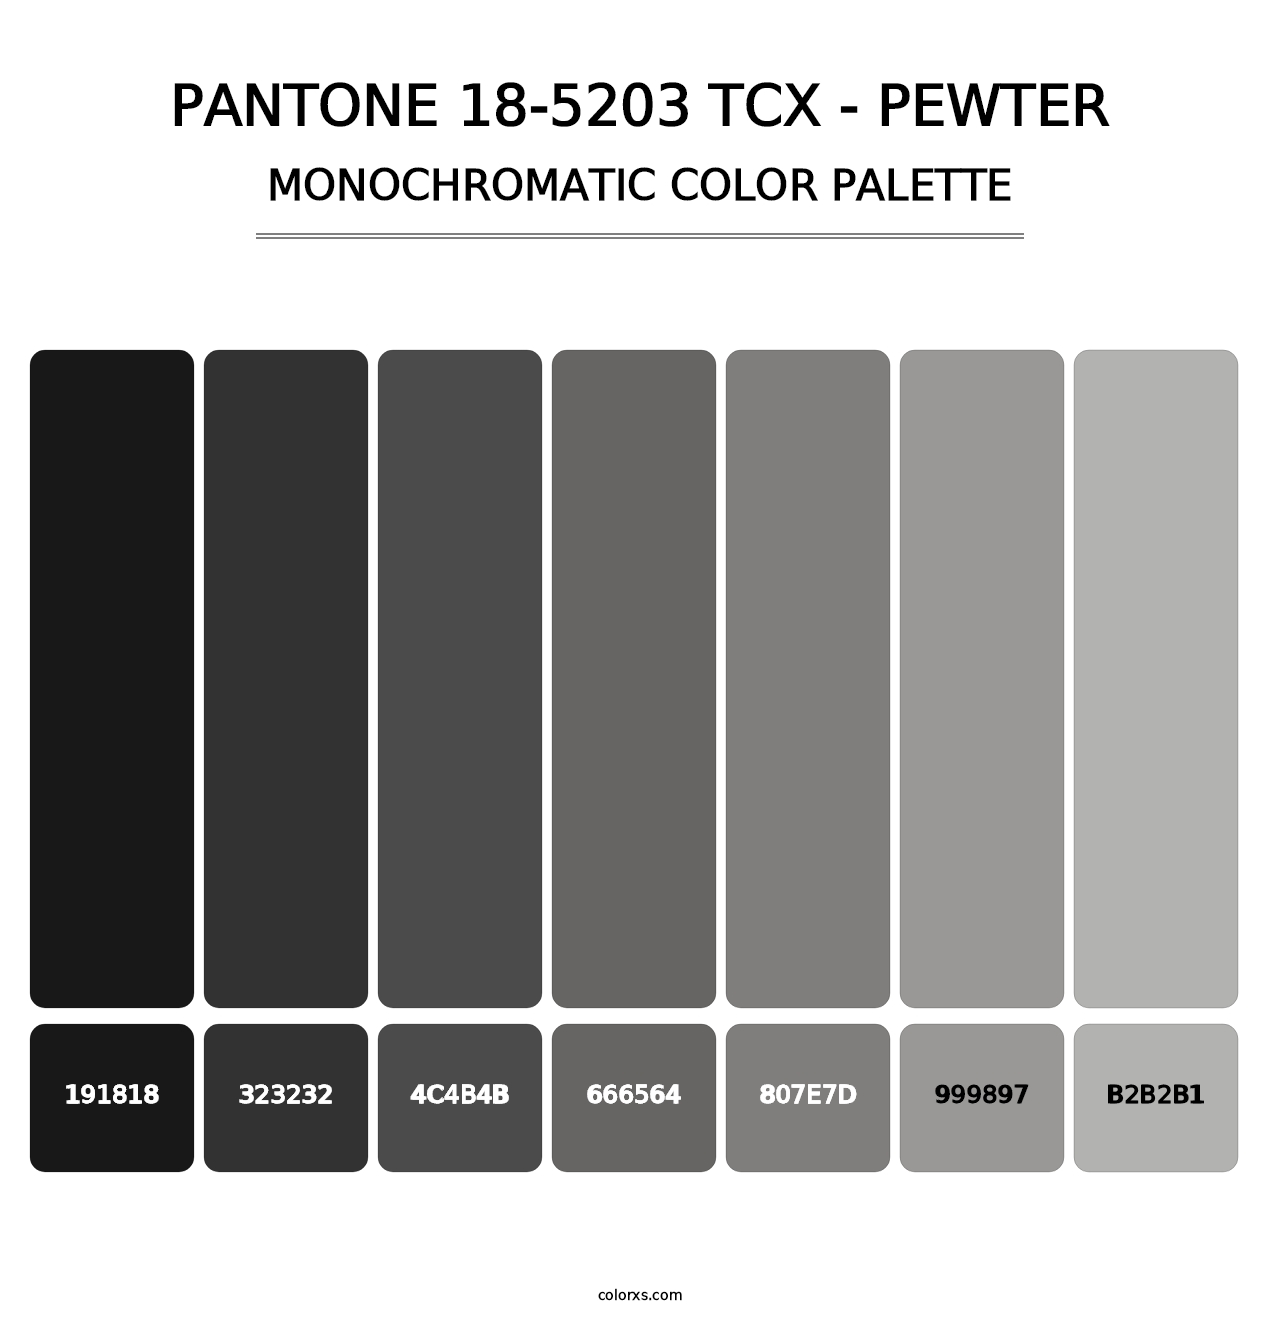 PANTONE 18-5203 TCX - Pewter - Monochromatic Color Palette